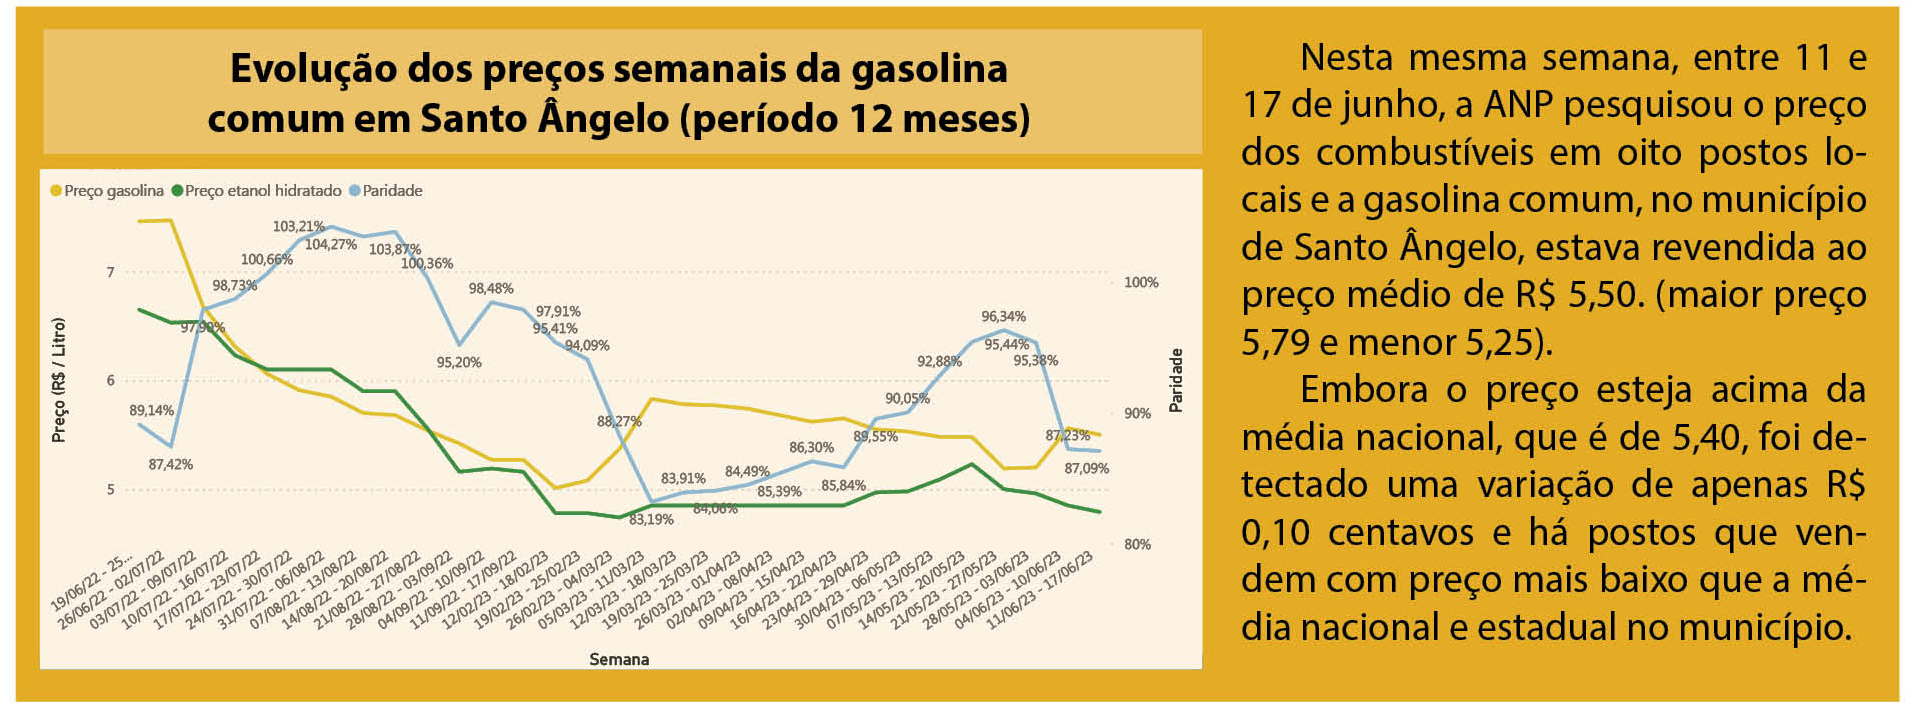 Preço da gasolina comum nos últimos 12 meses